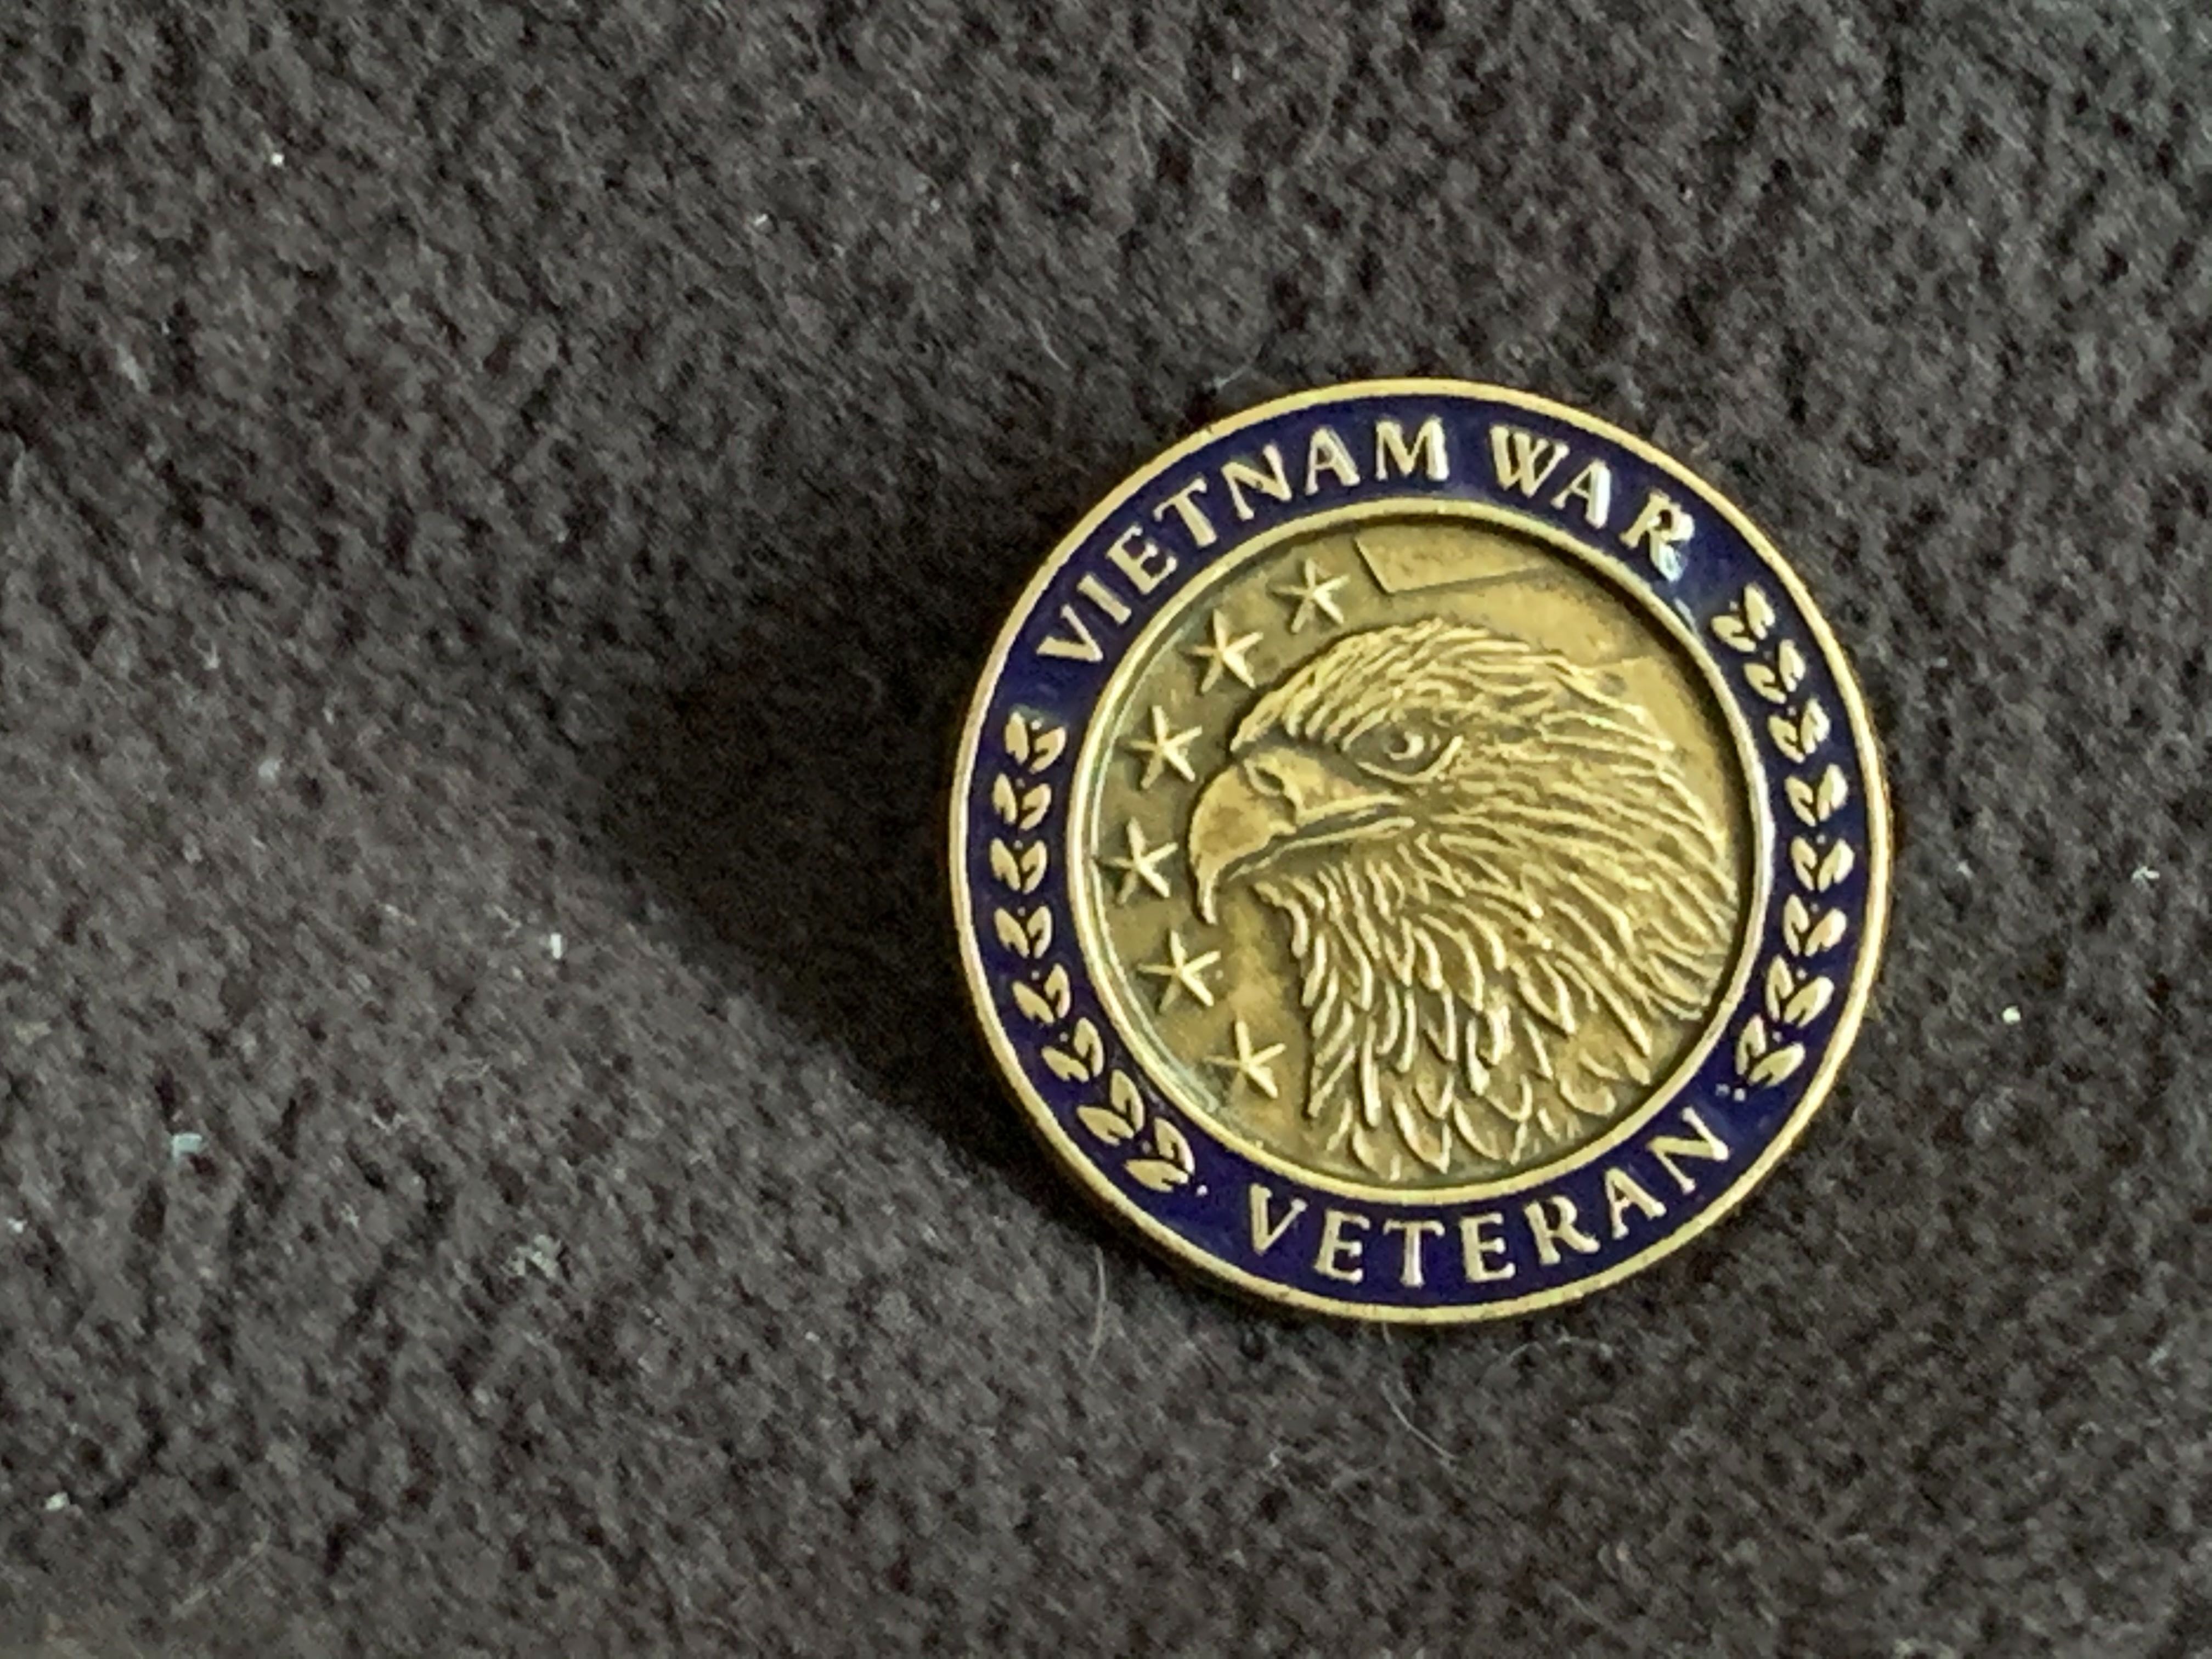 Vietnam War Veterans pin